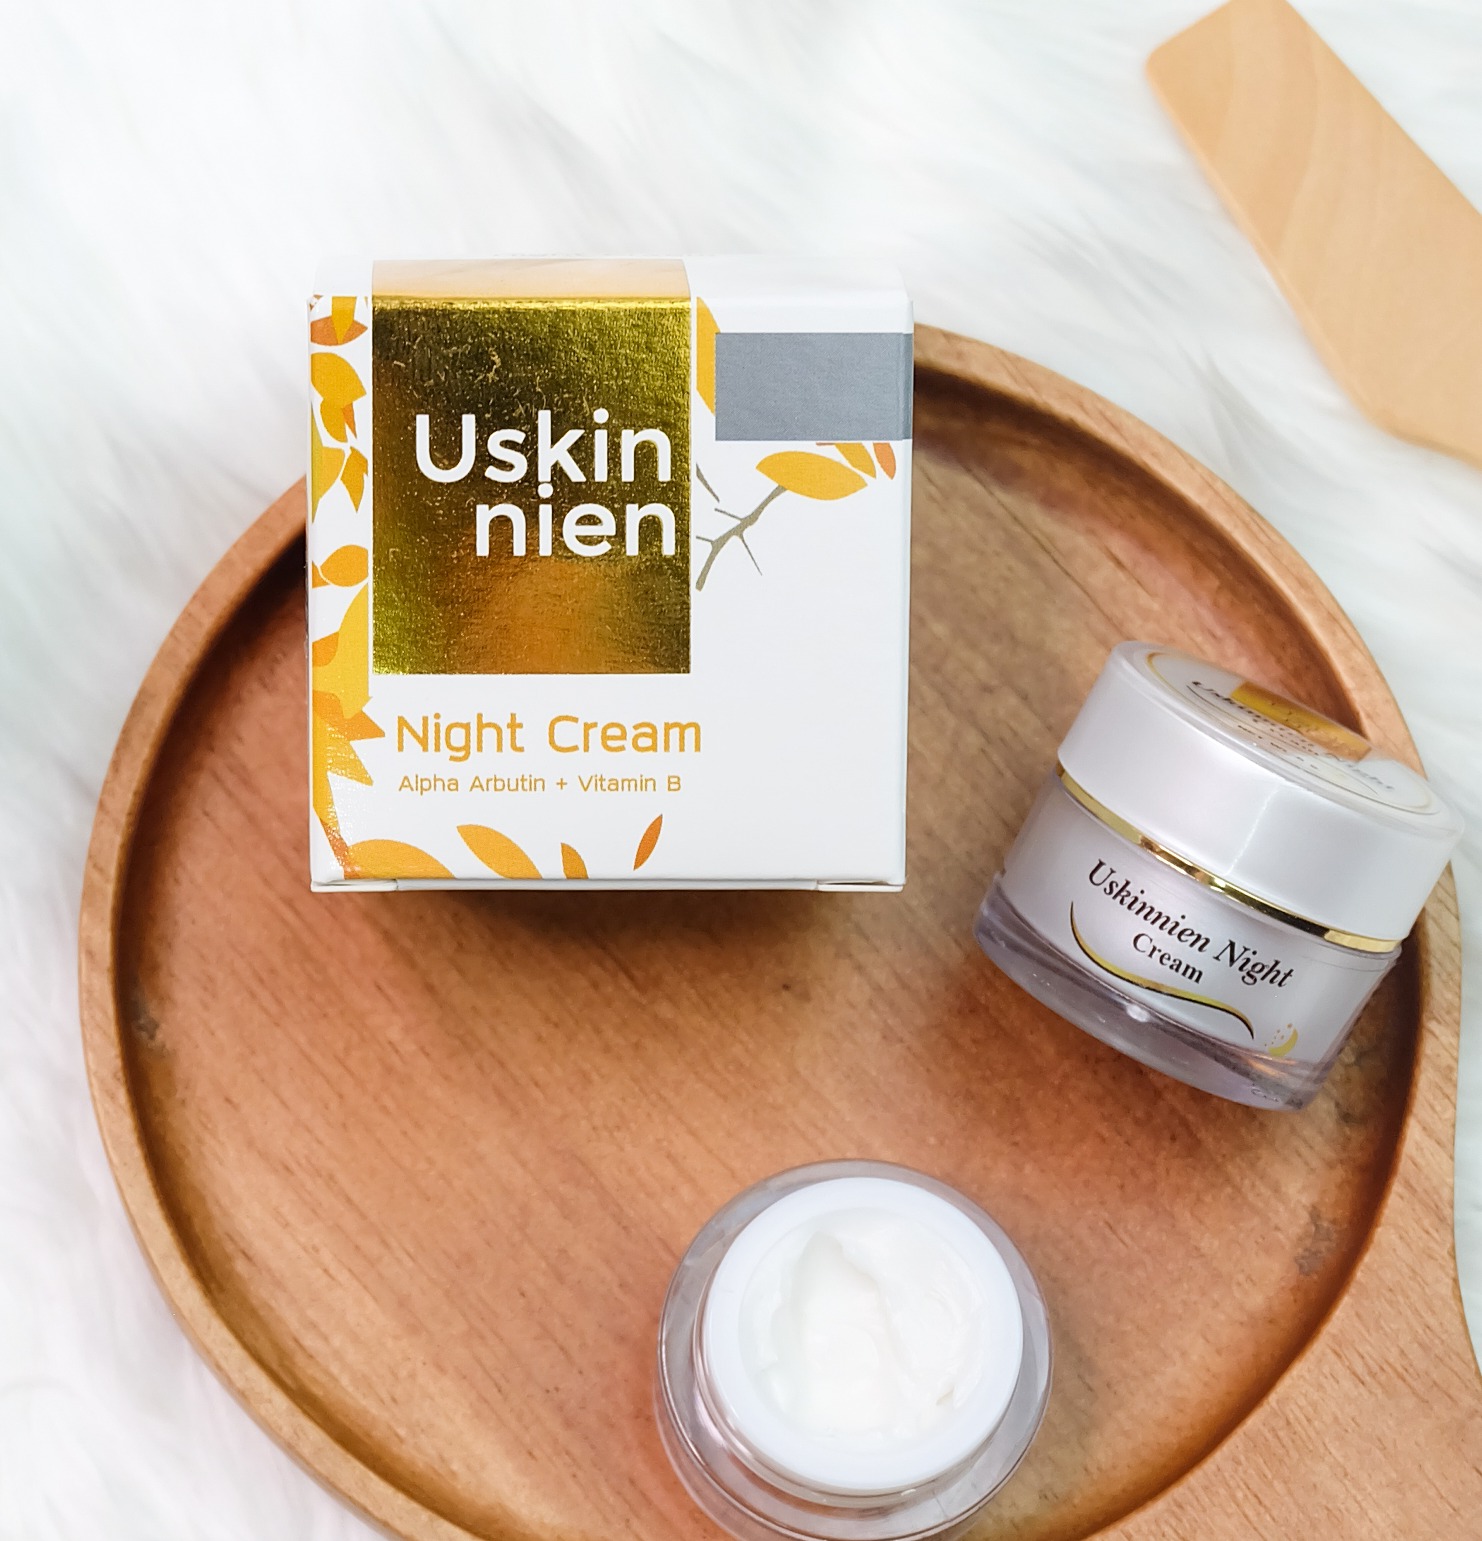 ผลิต 2020 Uskinnien night cream ครีมกลางคืน ครีมบำรุงผิวหน้สูตรกลางคืน กลางคืนแก้ฝ้าแก้สิว หน้าขาวใสใน 3 วัน